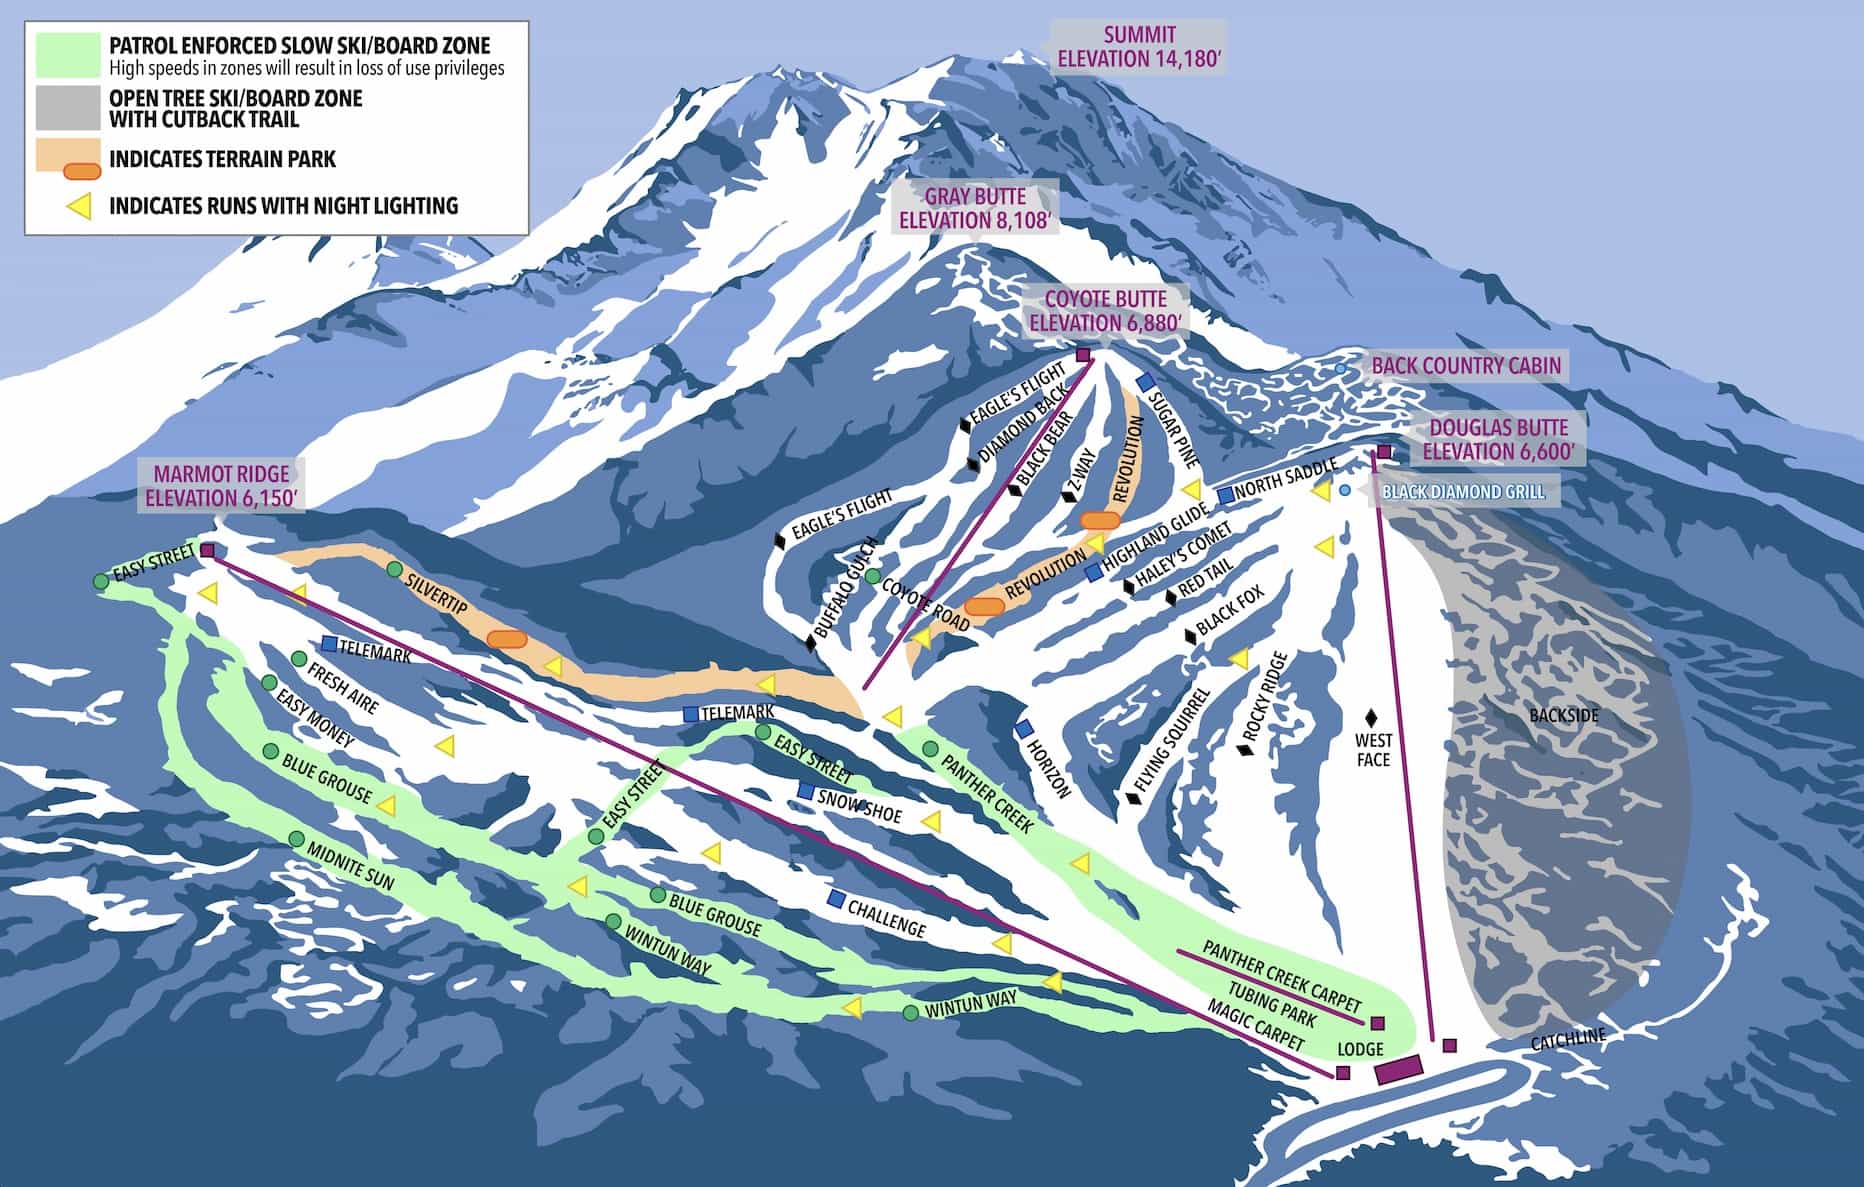 Mount Shasta ski park